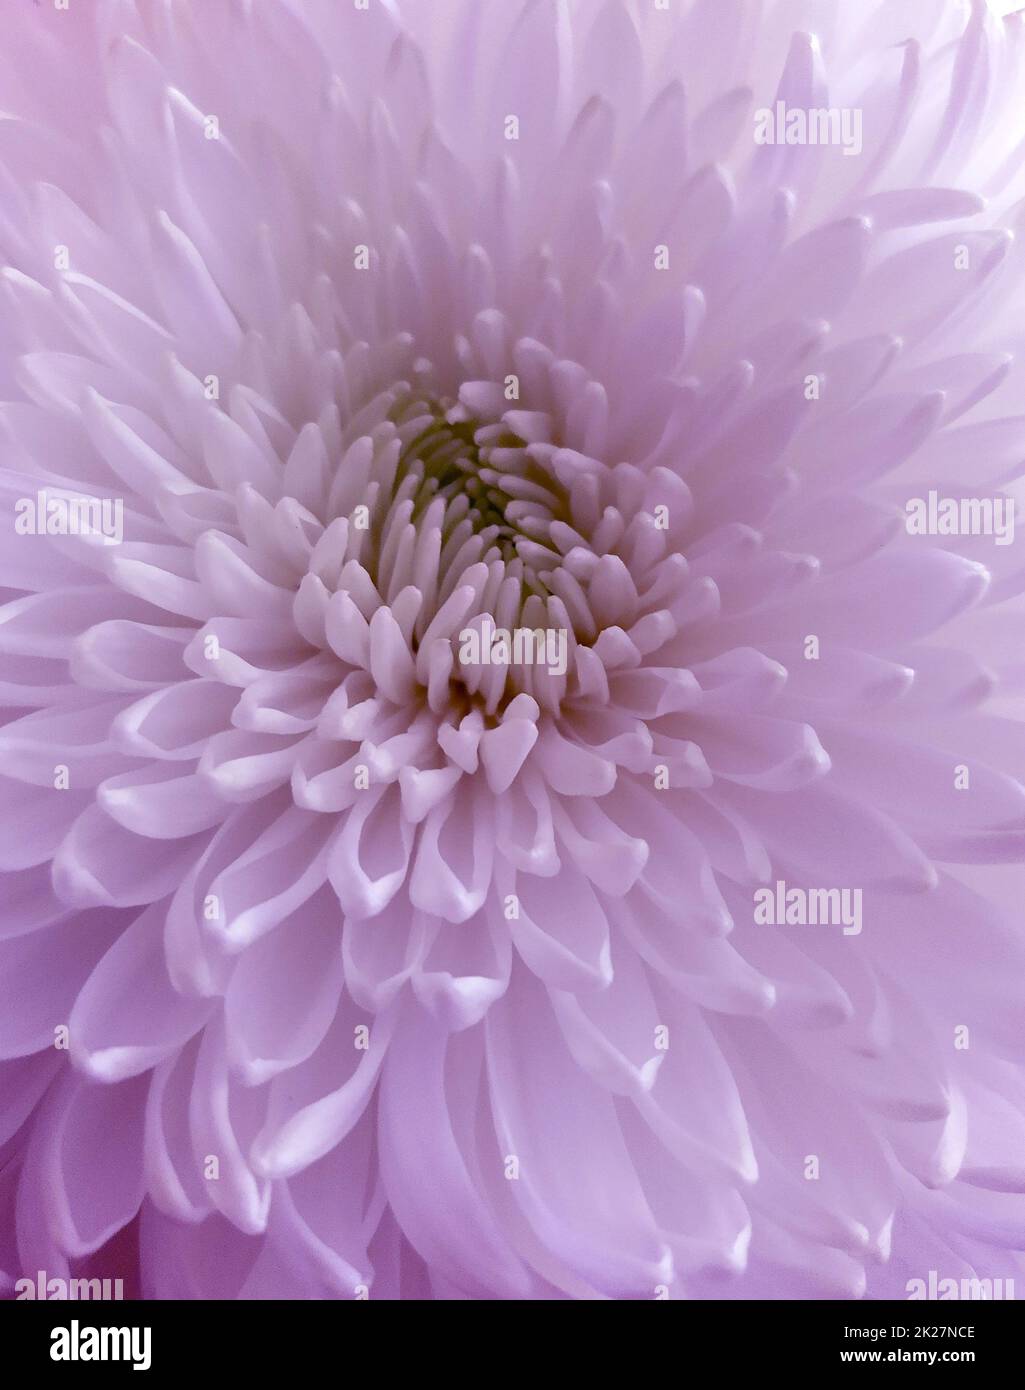 Fleur de chrysanthème en gros plan Banque D'Images